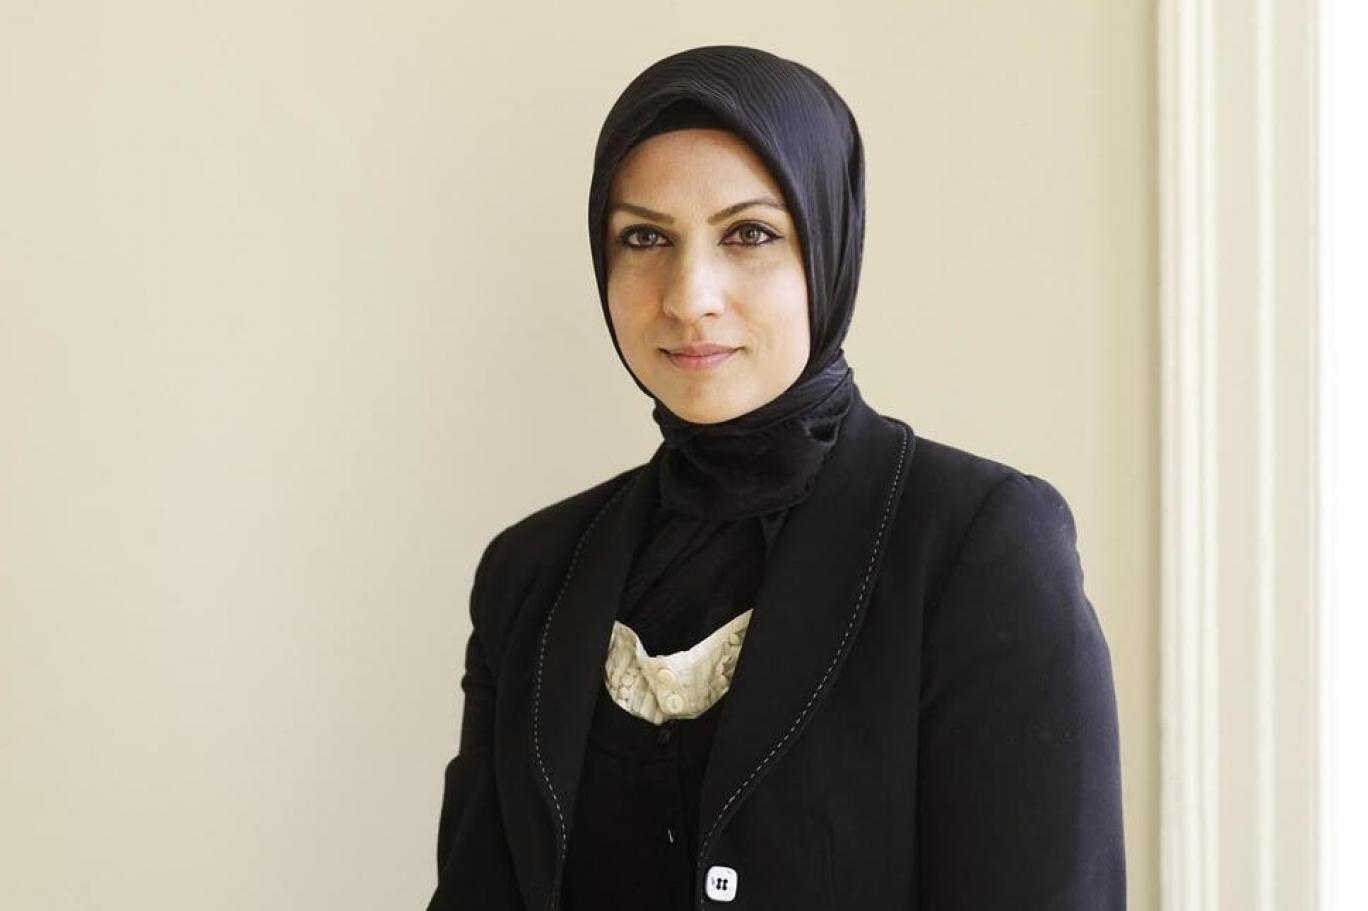 رافيا أرشد.. أول قاضية مسلمة بالحجاب في بريطانيا ـ صورة لـ"اندبندنت" البريطانية